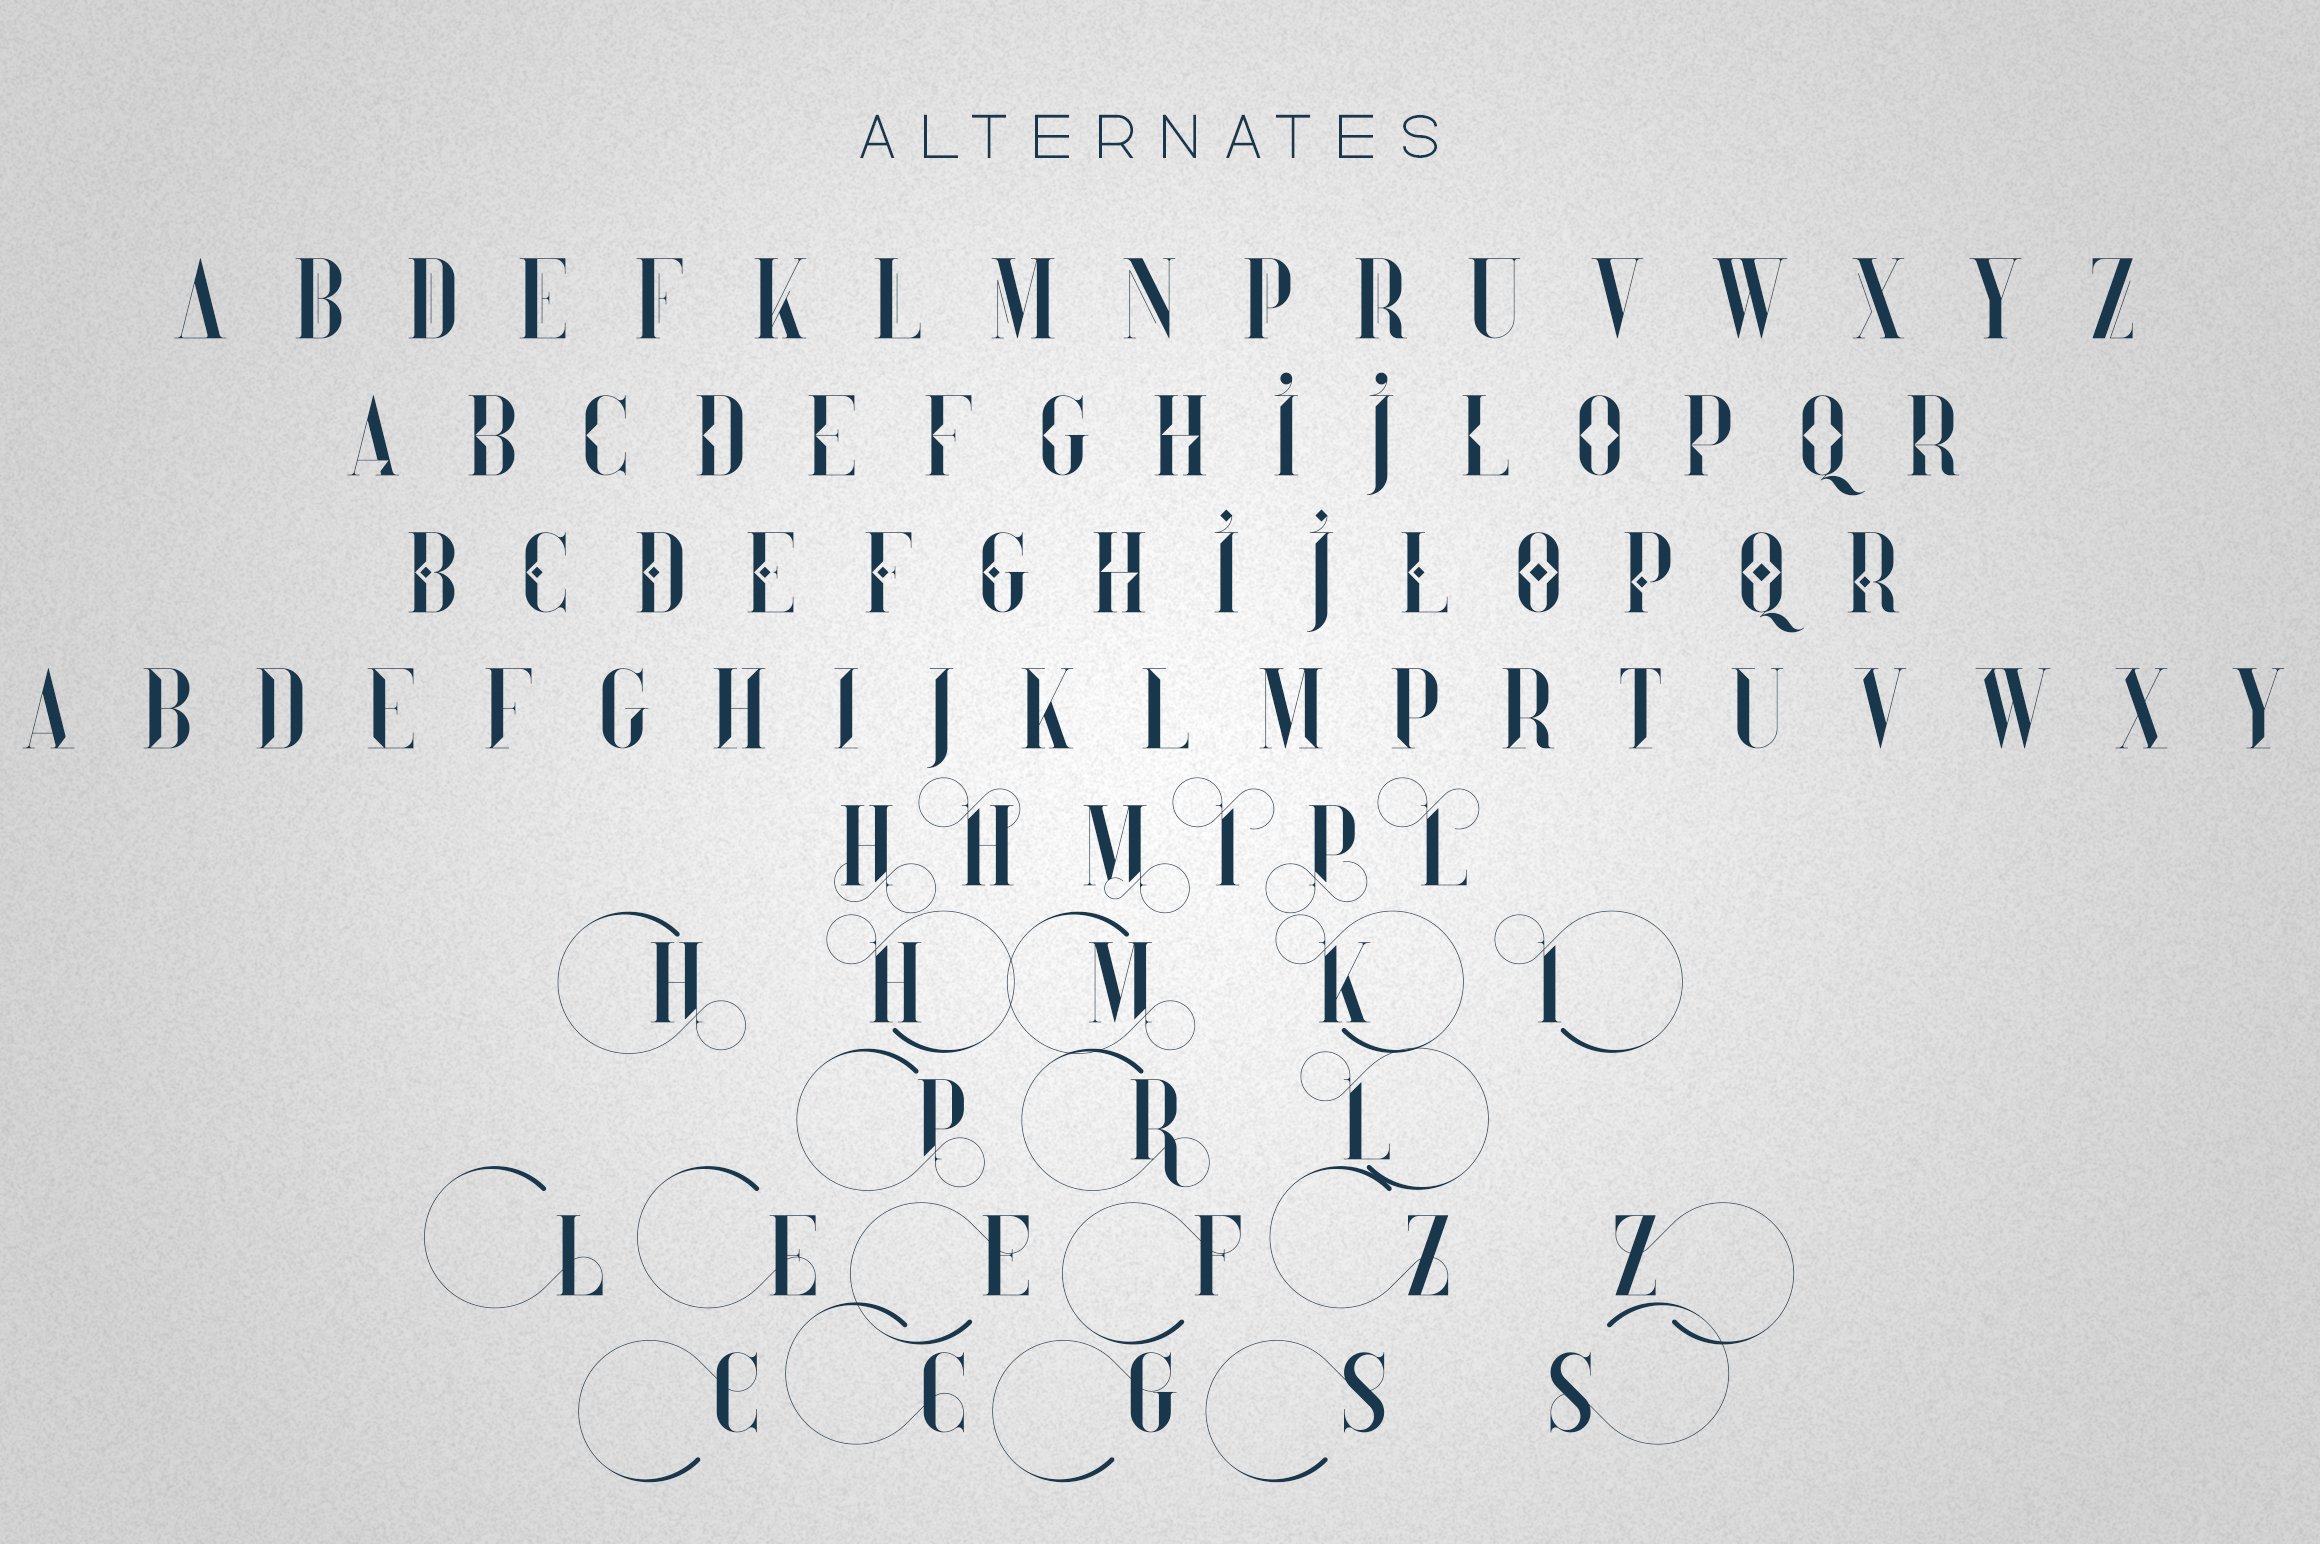 Kindel - Sans Serif Typeface By VPcreativeshop